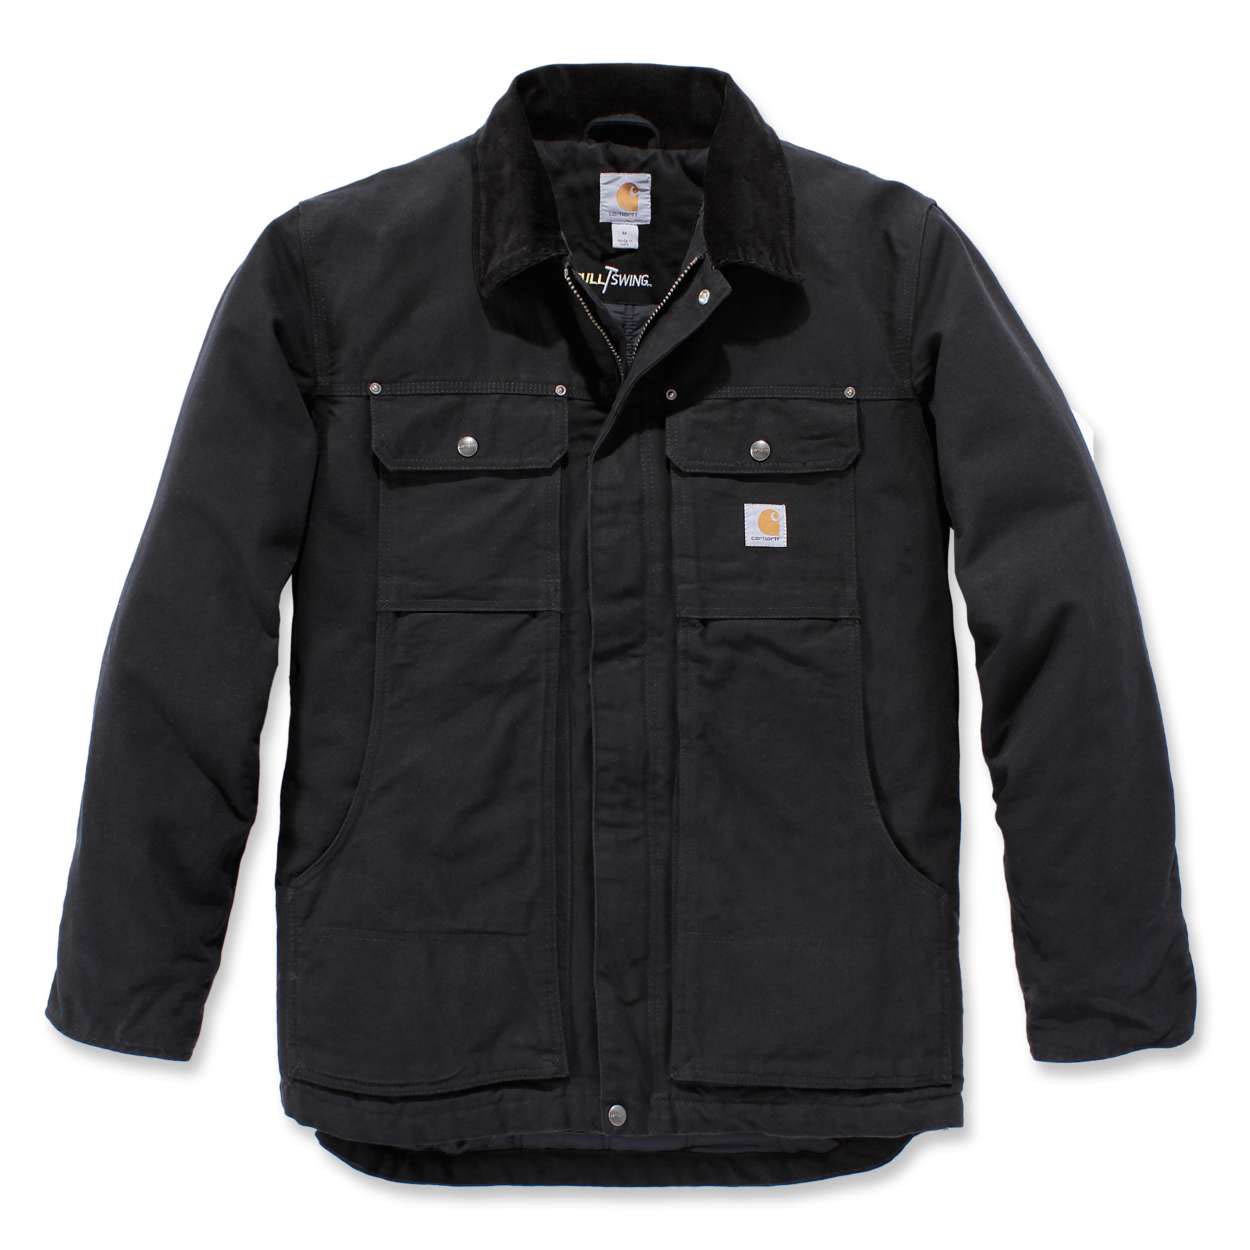 Carhartt 103283 Full Swing Traditional Coat - Workwear Jackets - Workwear -  Best Workwear